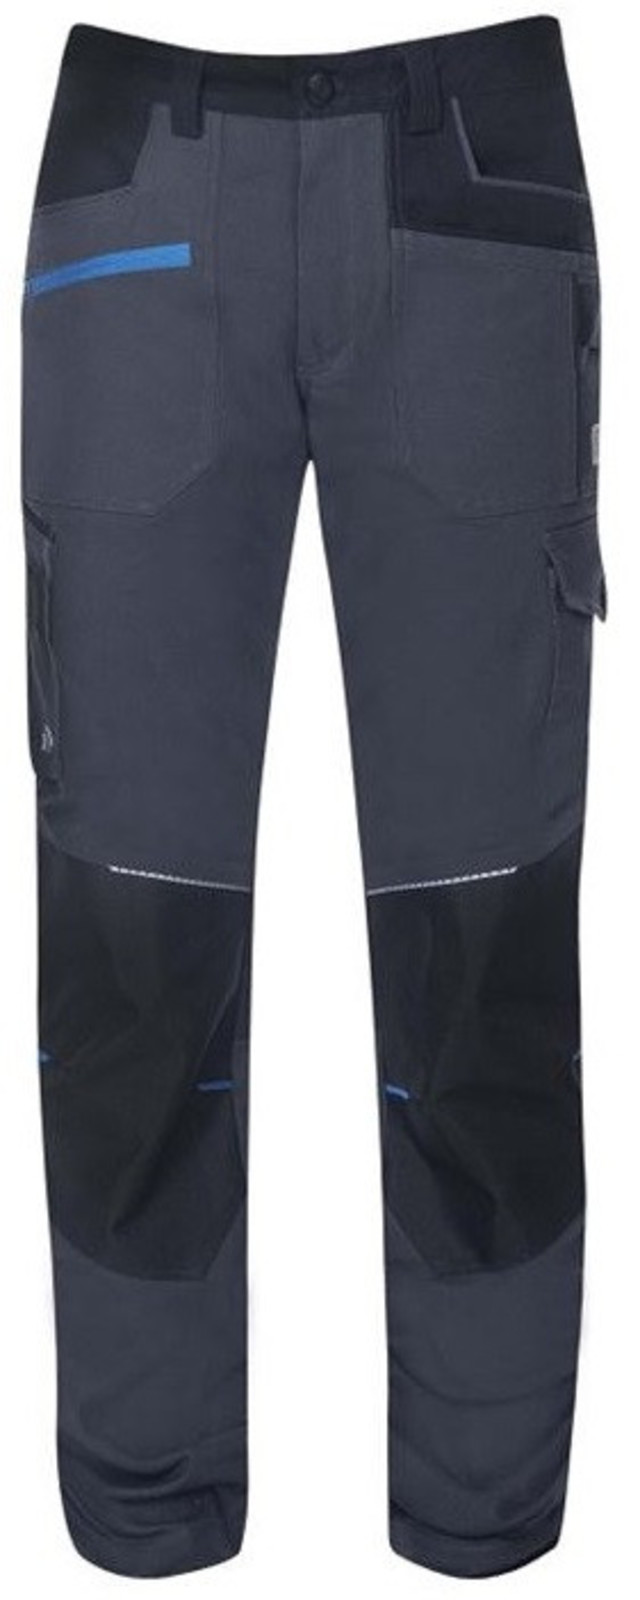 Detské strečové nohavice Ardon 4Xstretch - veľkosť: 134/140, farba: tmavo šedá